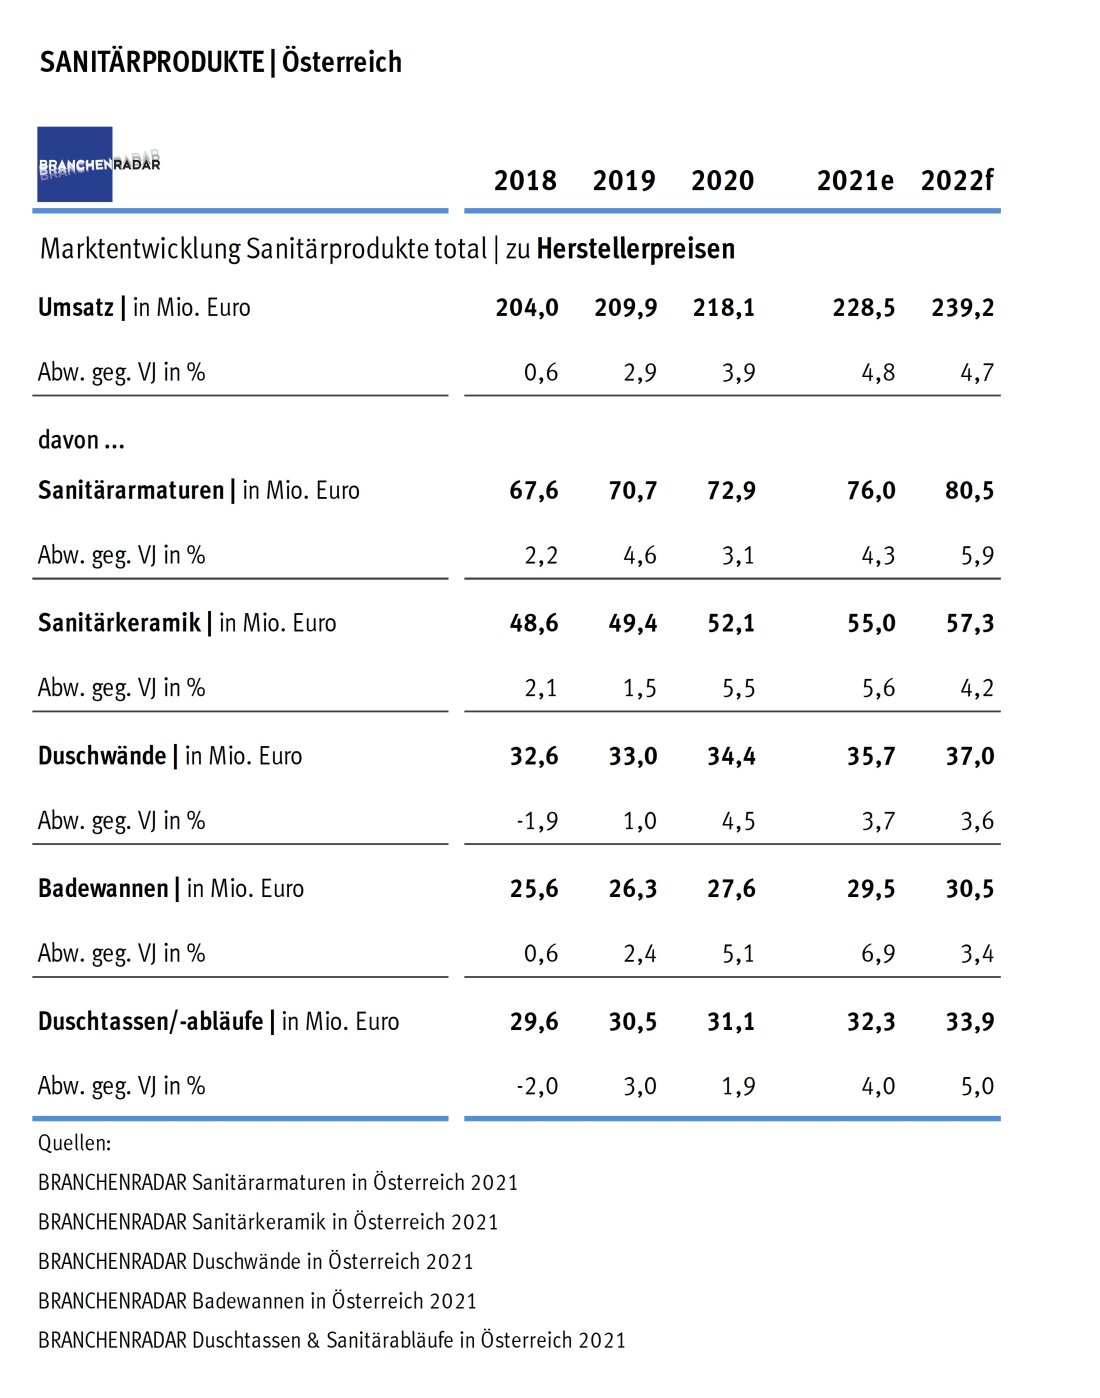 Marktentwicklung Sanitärprodukte in Österreich 2018 bis 2022